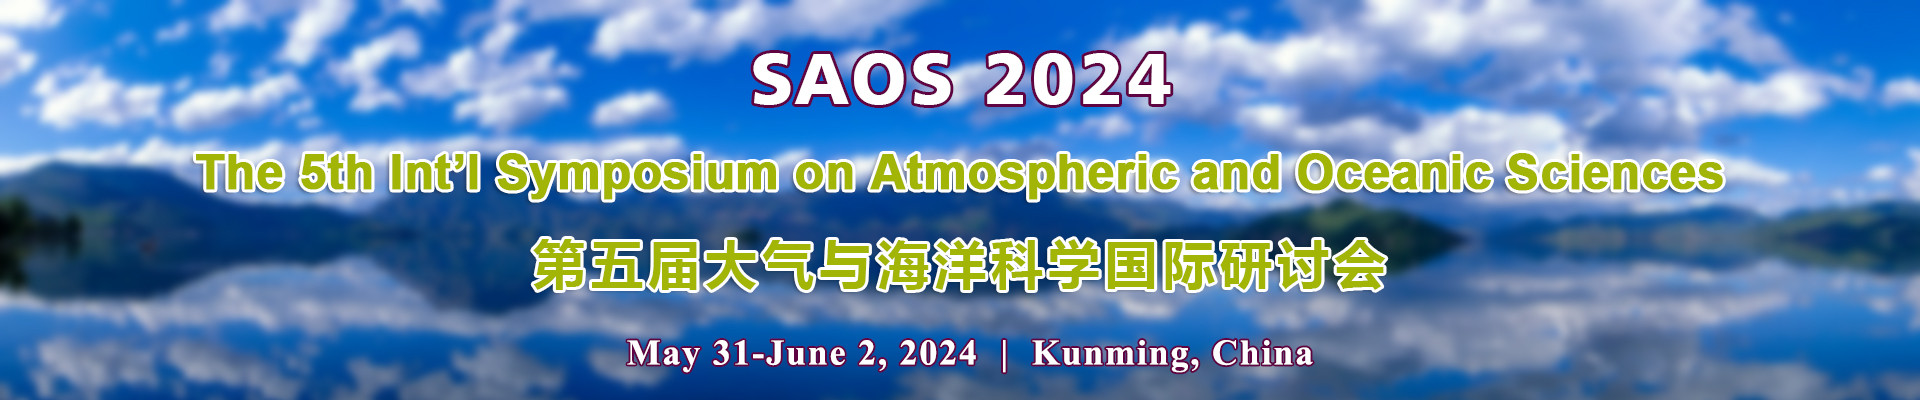 第五届大气与海洋科学国际研讨会(SAOS 2024)